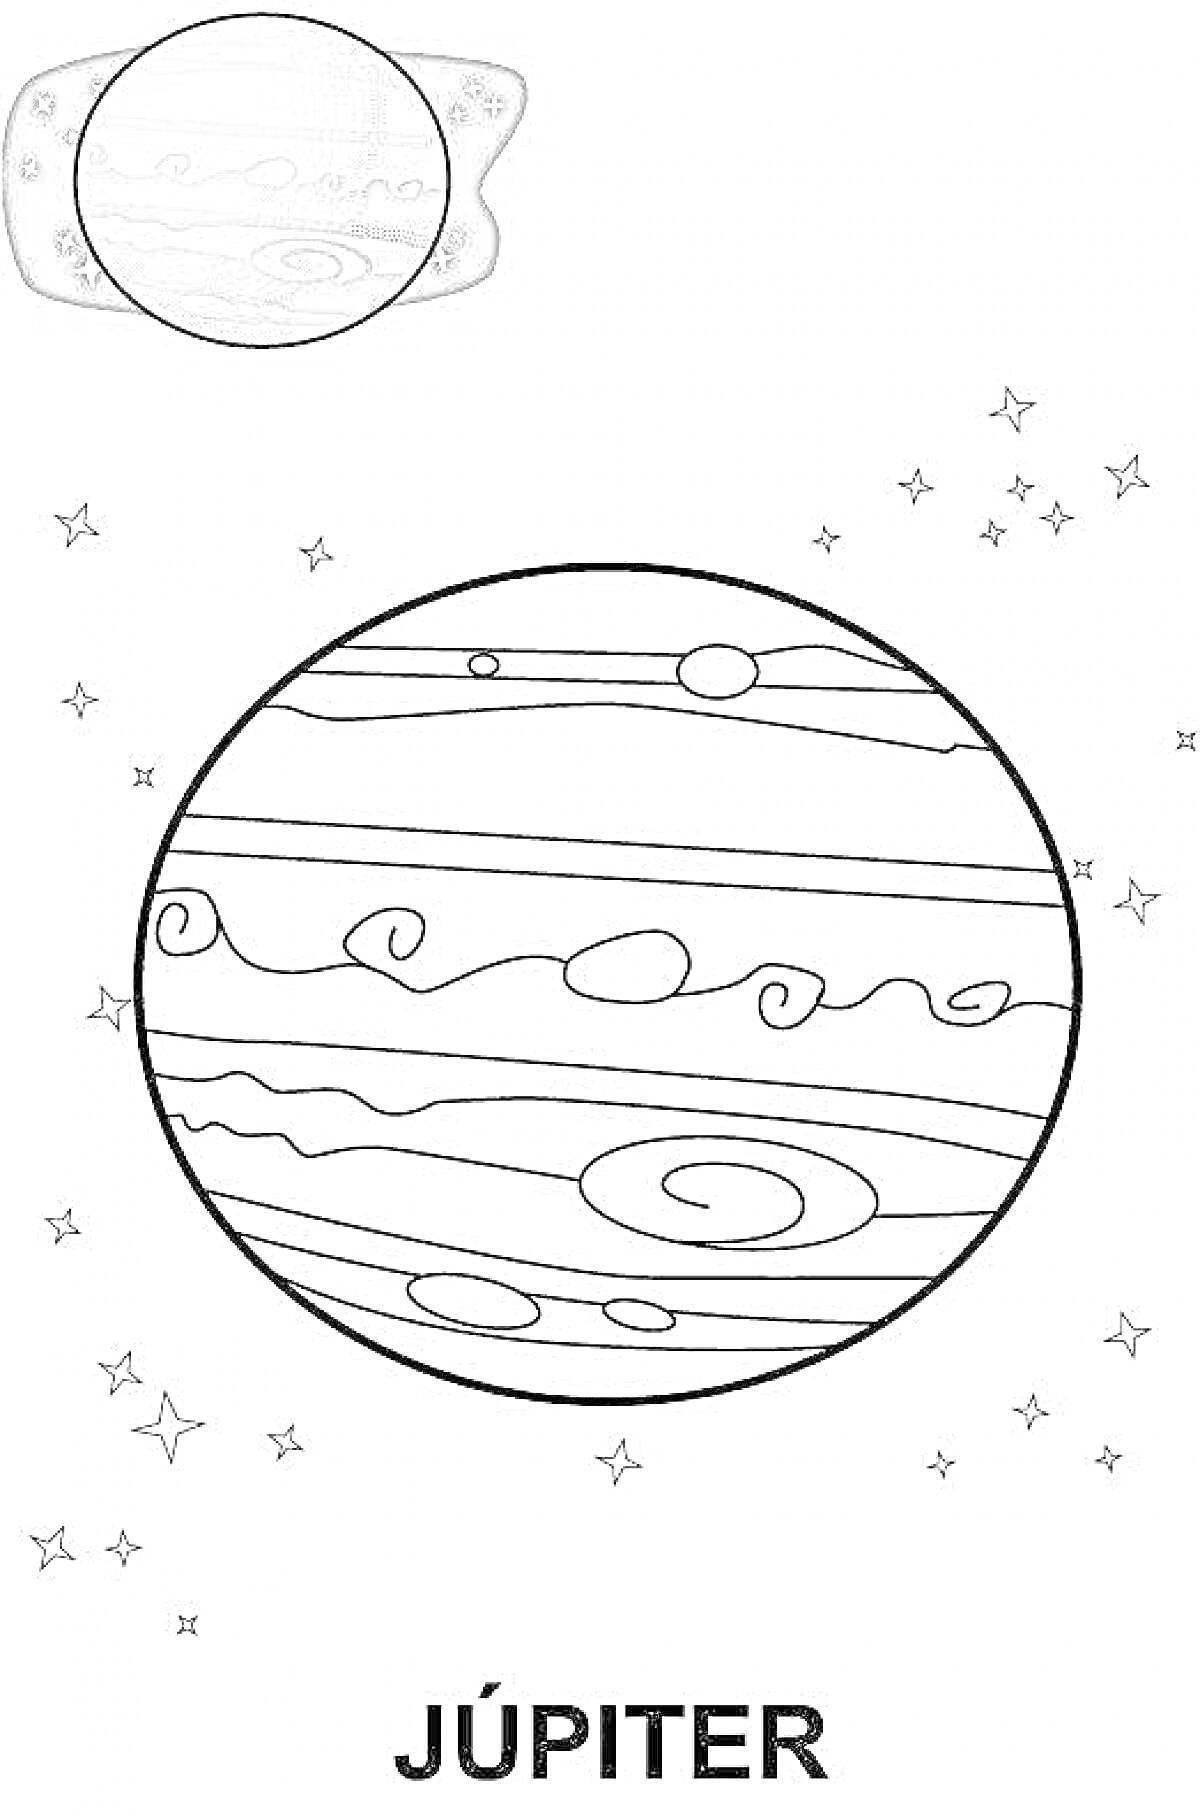 Раскраска Планета Юпитер с узорами, звездами и примером раскрашенной планеты в углу